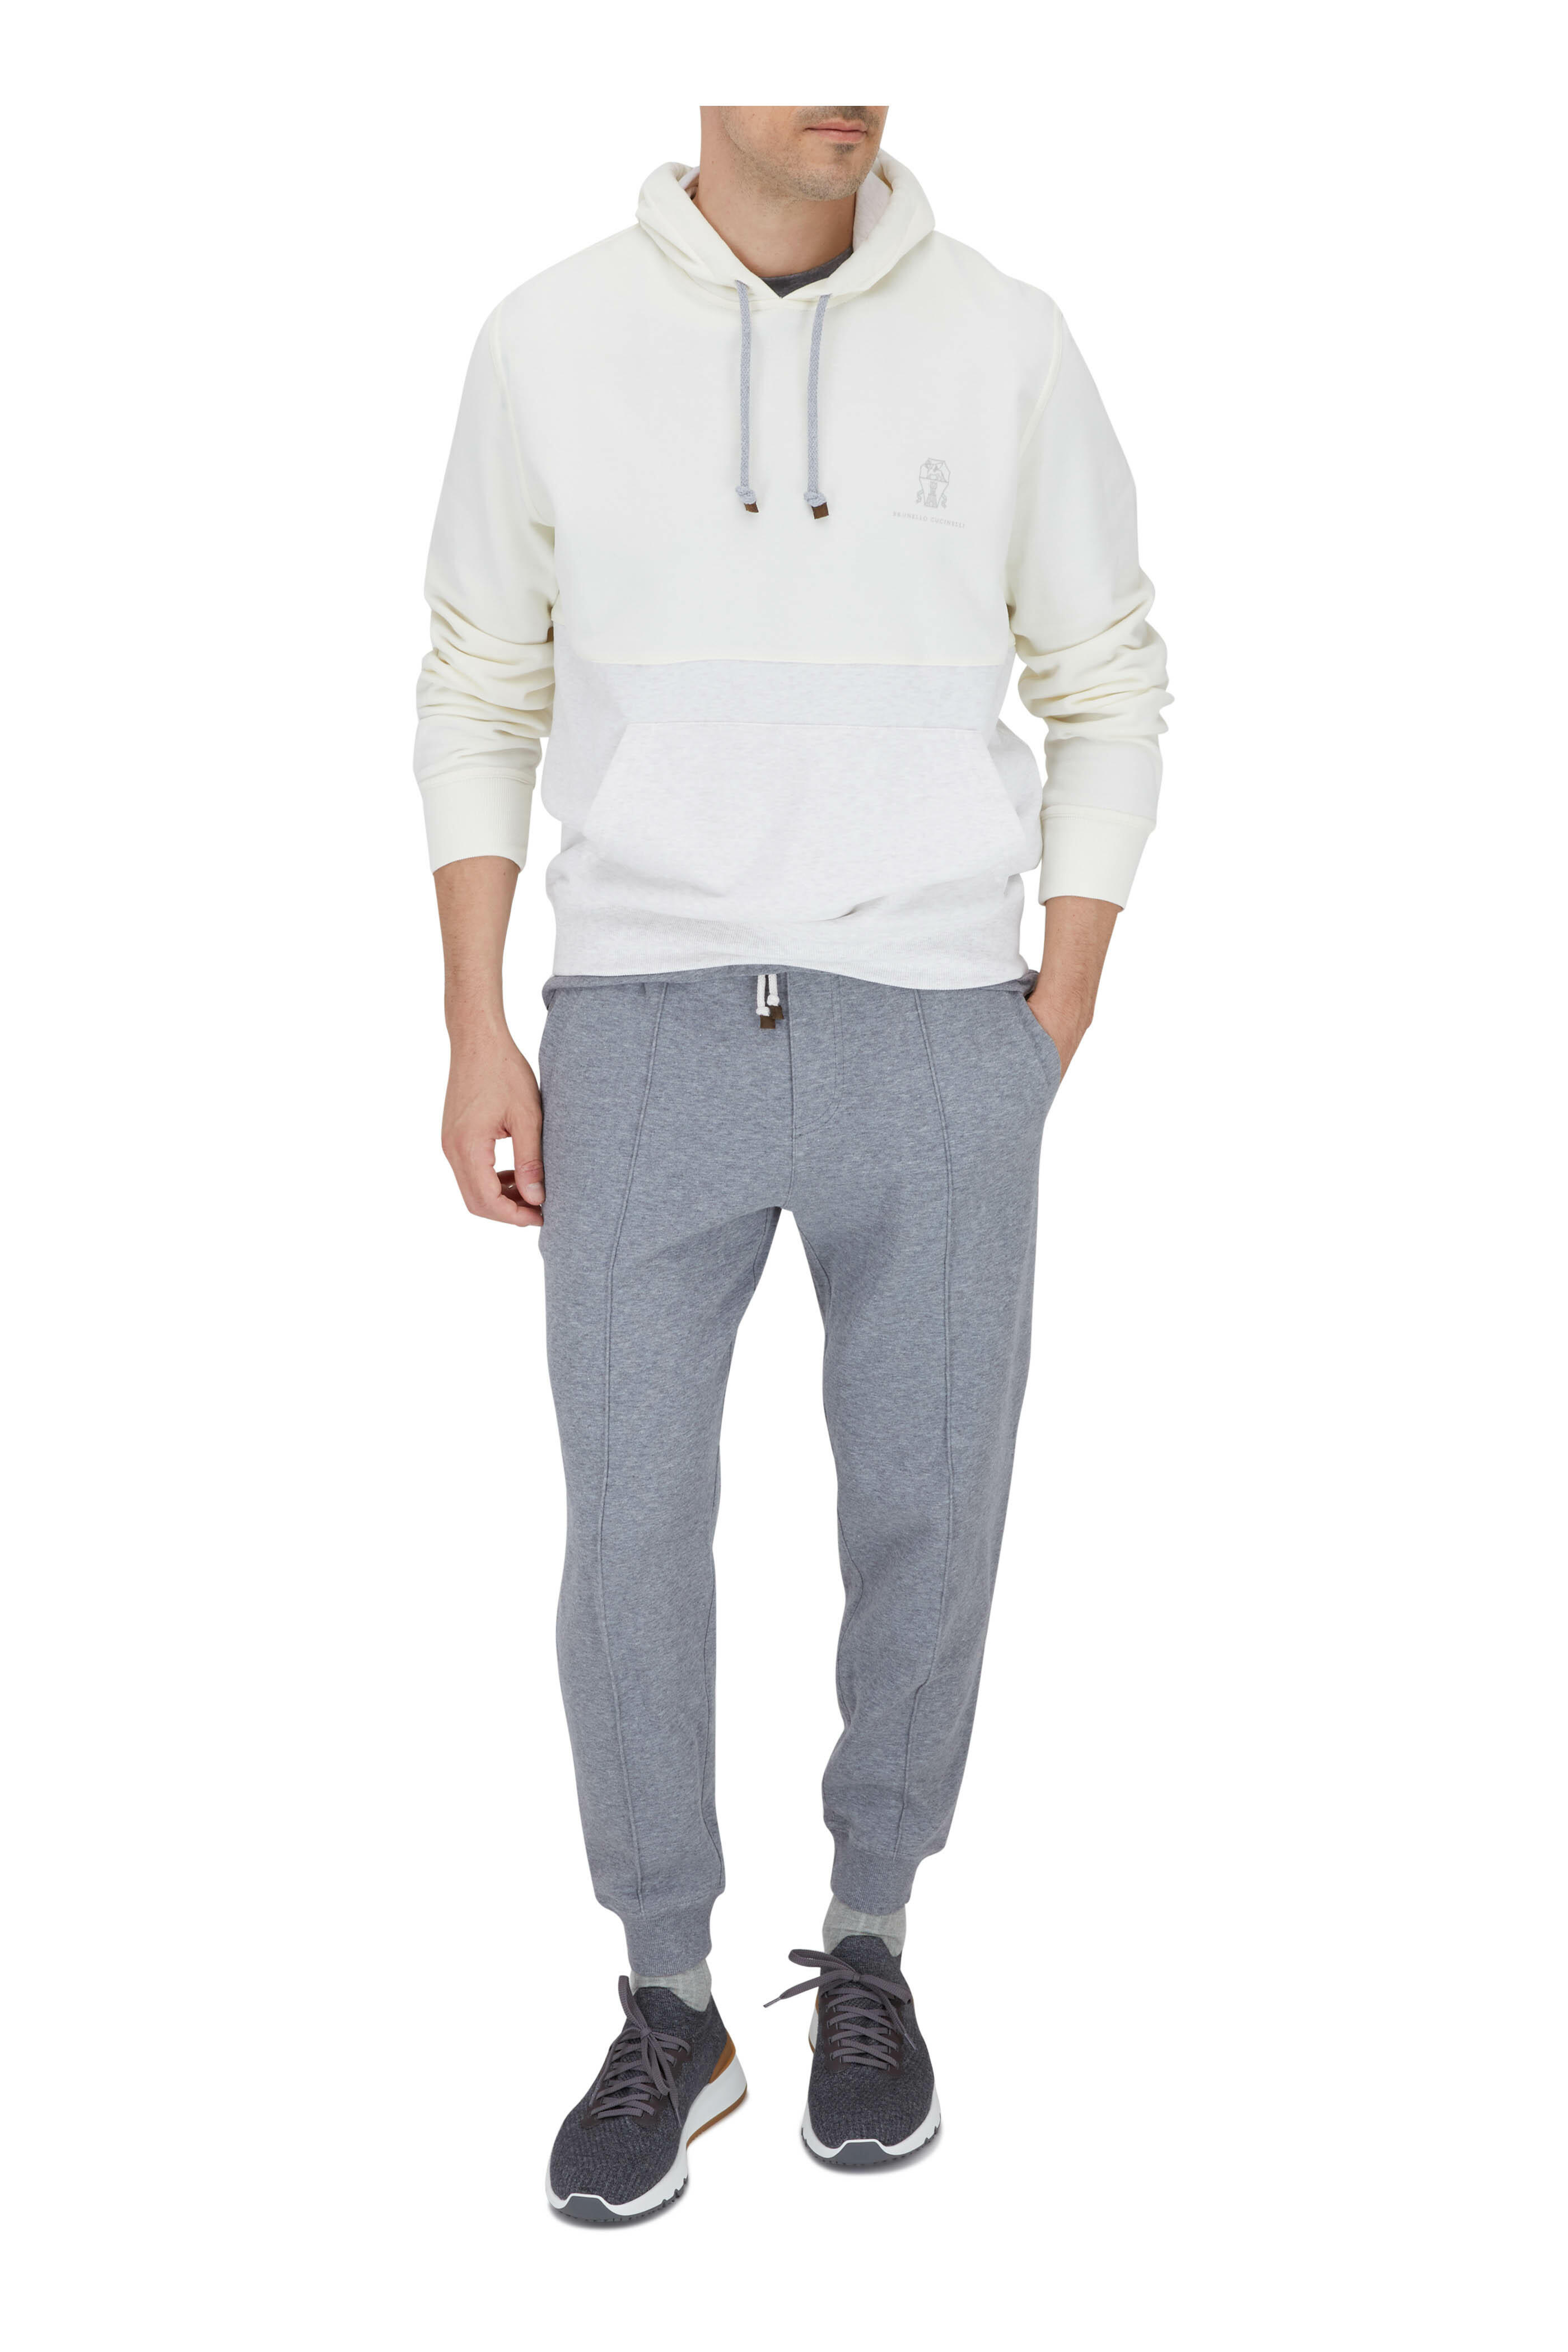 Brunello Cucinelli Cotton-jersey Zip-Up Sweatshirt - Men - Navy Sweats - S